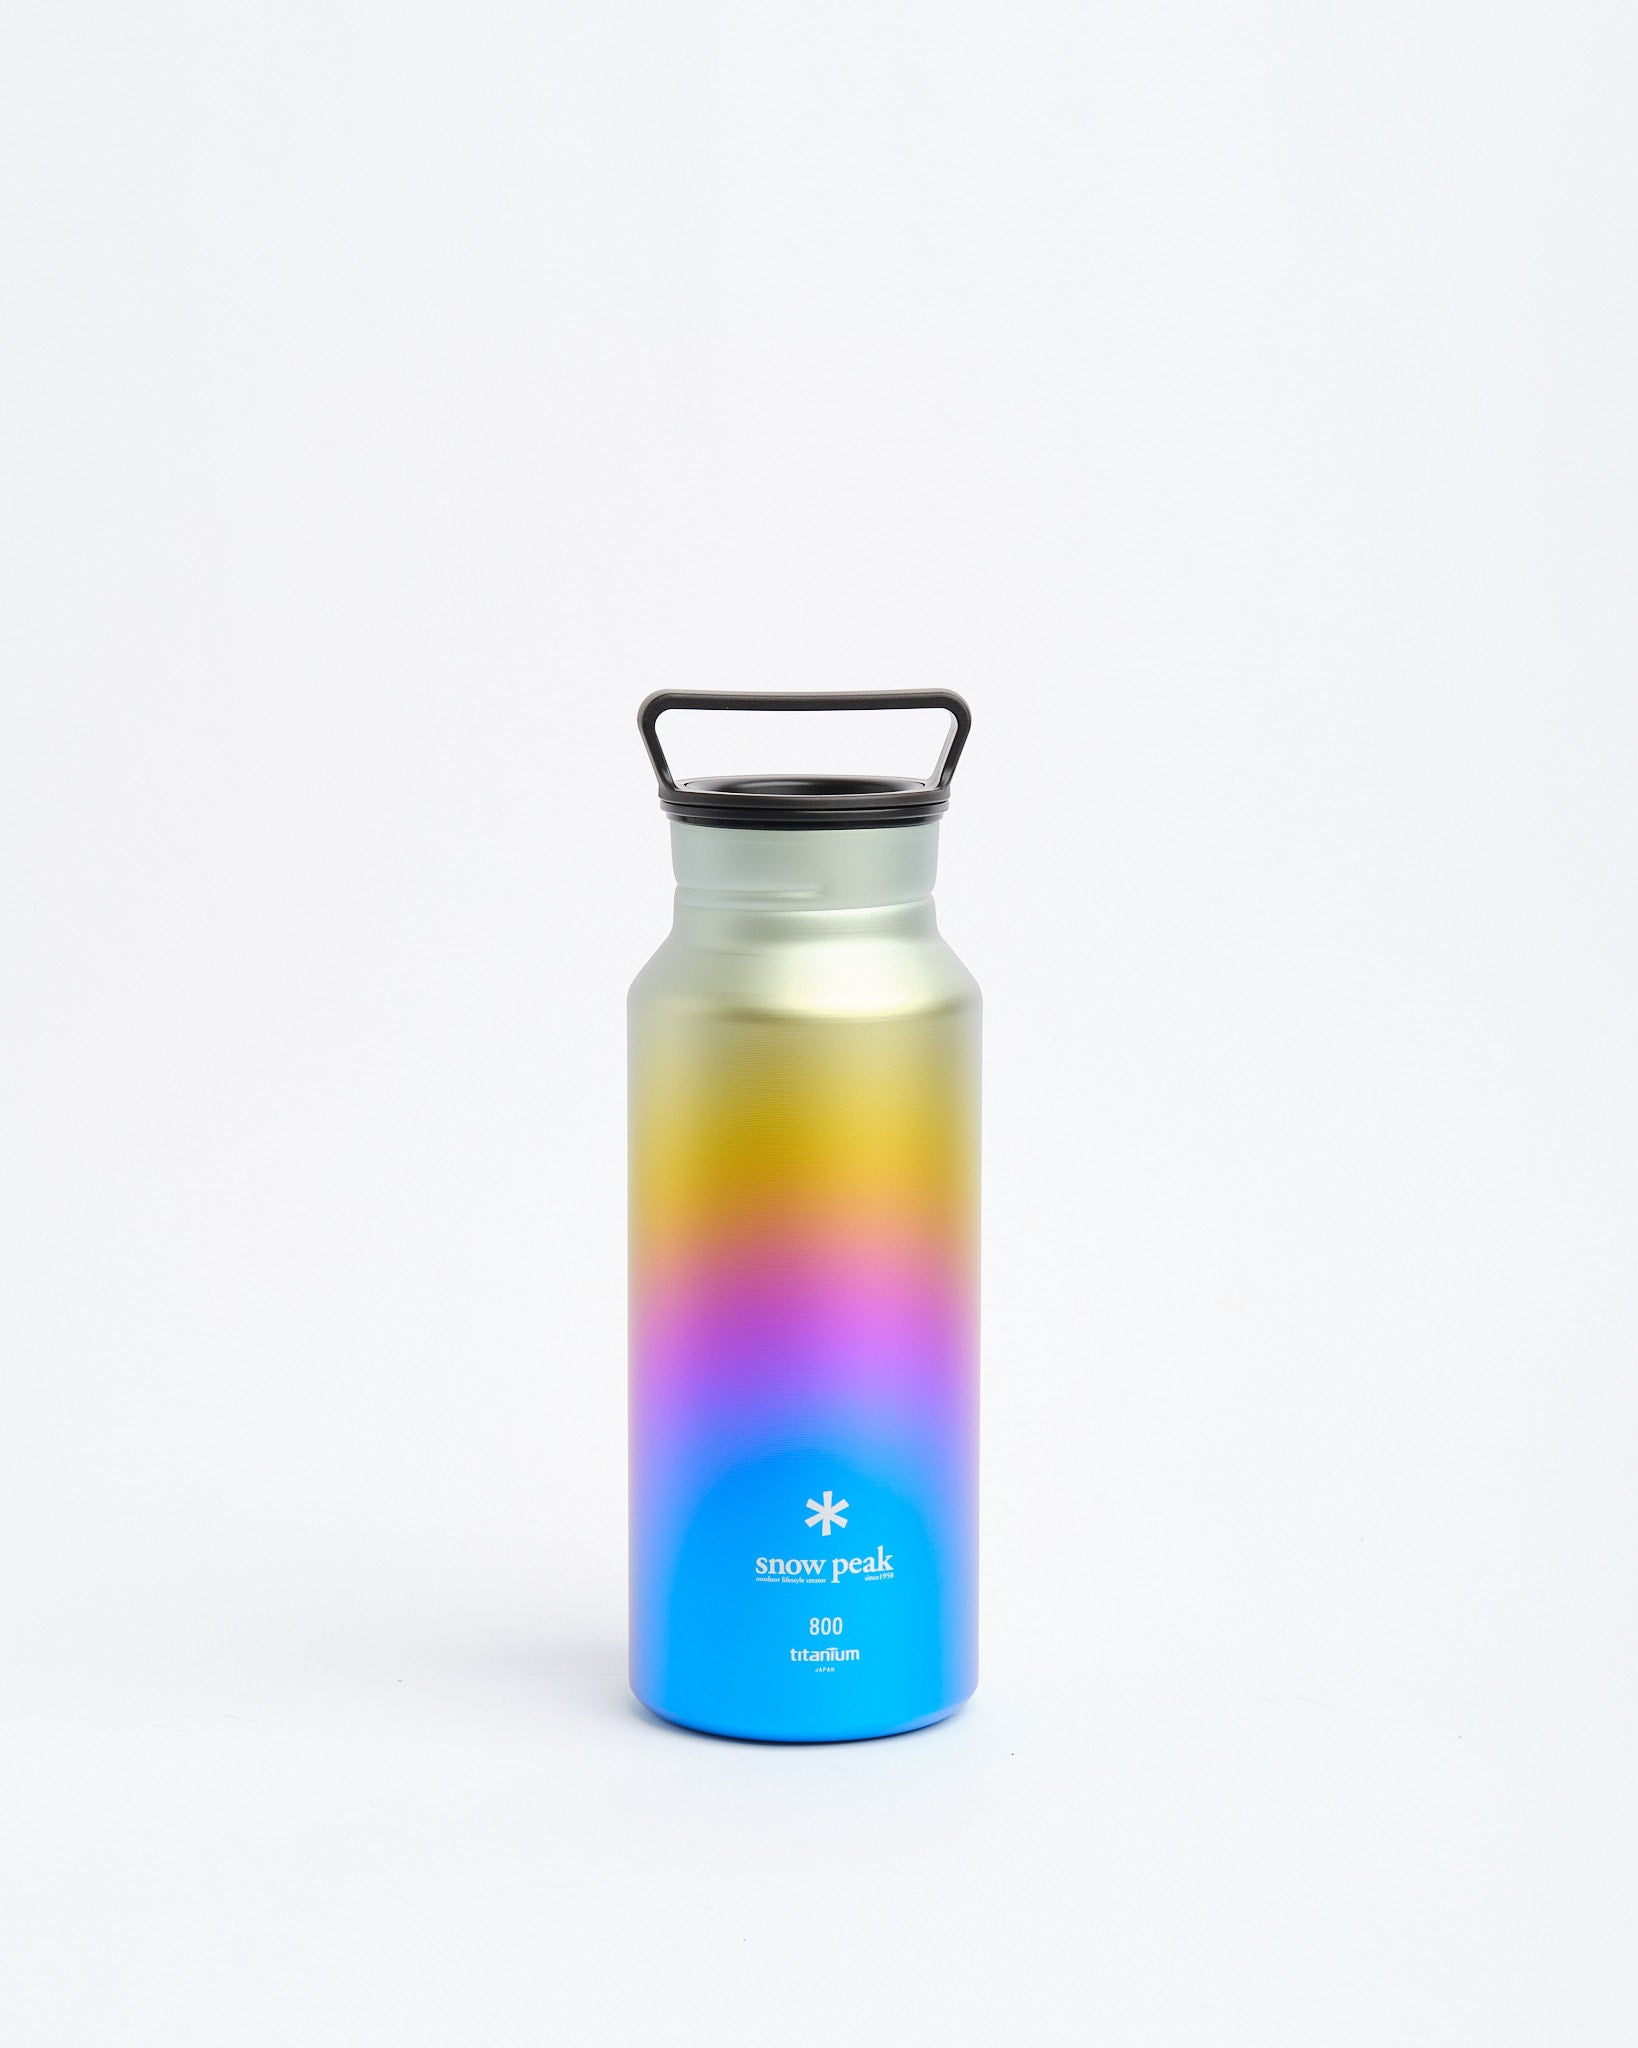 http://www.meadowweb.com/cdn/shop/products/aurora-bottle-800-rainbow-469117.jpg?v=1702599820